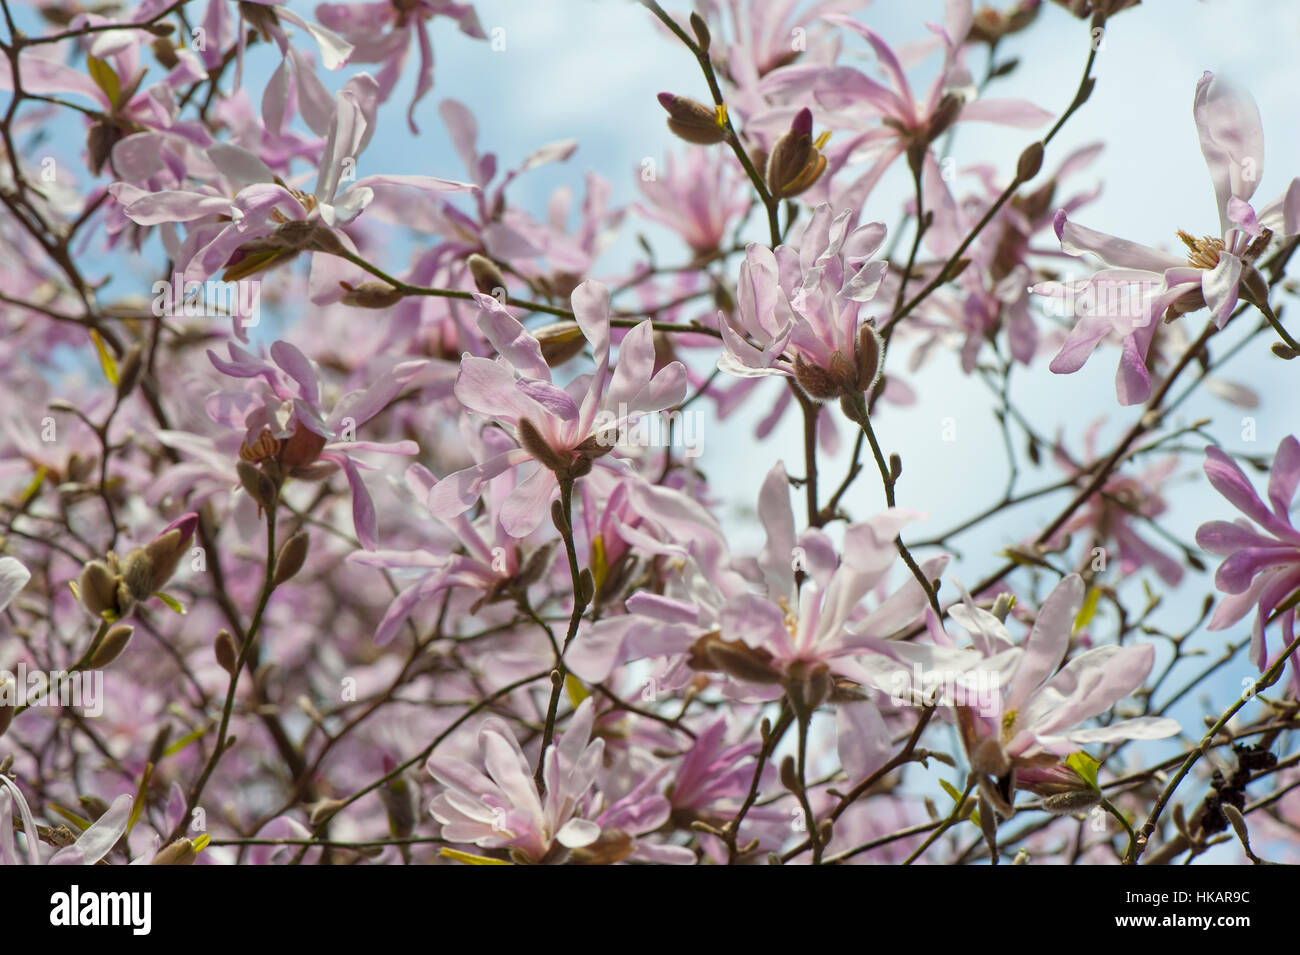 Le beau printemps fleurs roses et blanches de Magnolia stellata également connu sous le nom de l'étoile magnolia, image prise contre un ciel bleu Banque D'Images